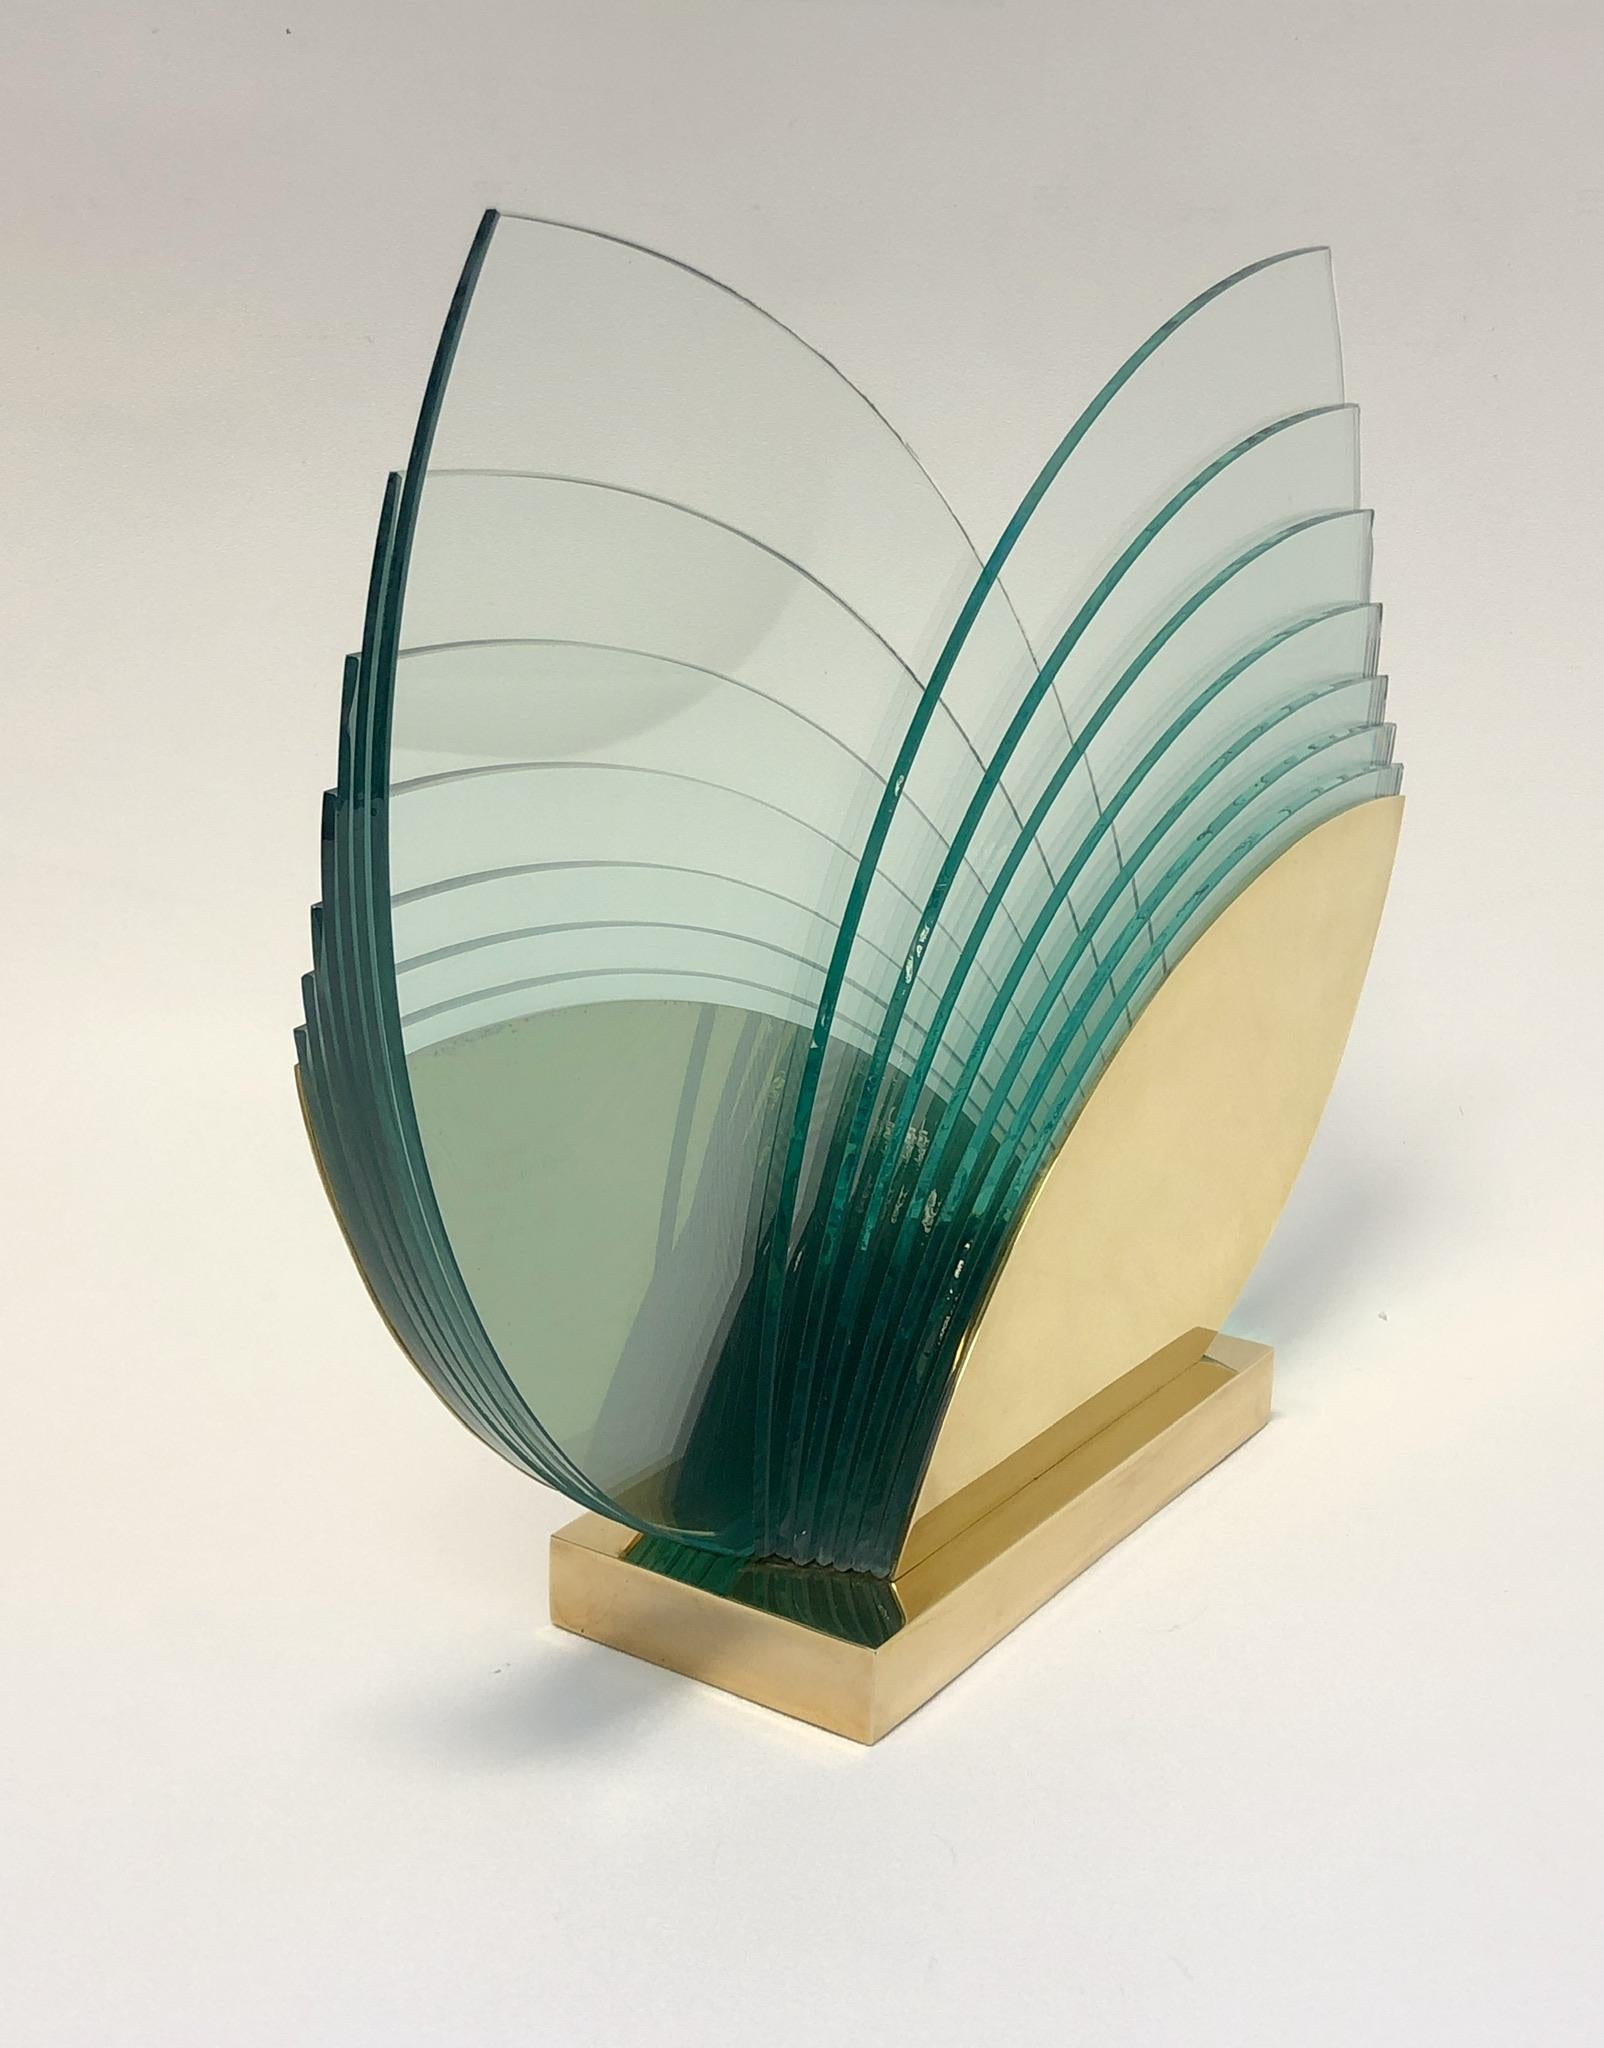 American Brass and Glass Sculpture by Runstadler Studios